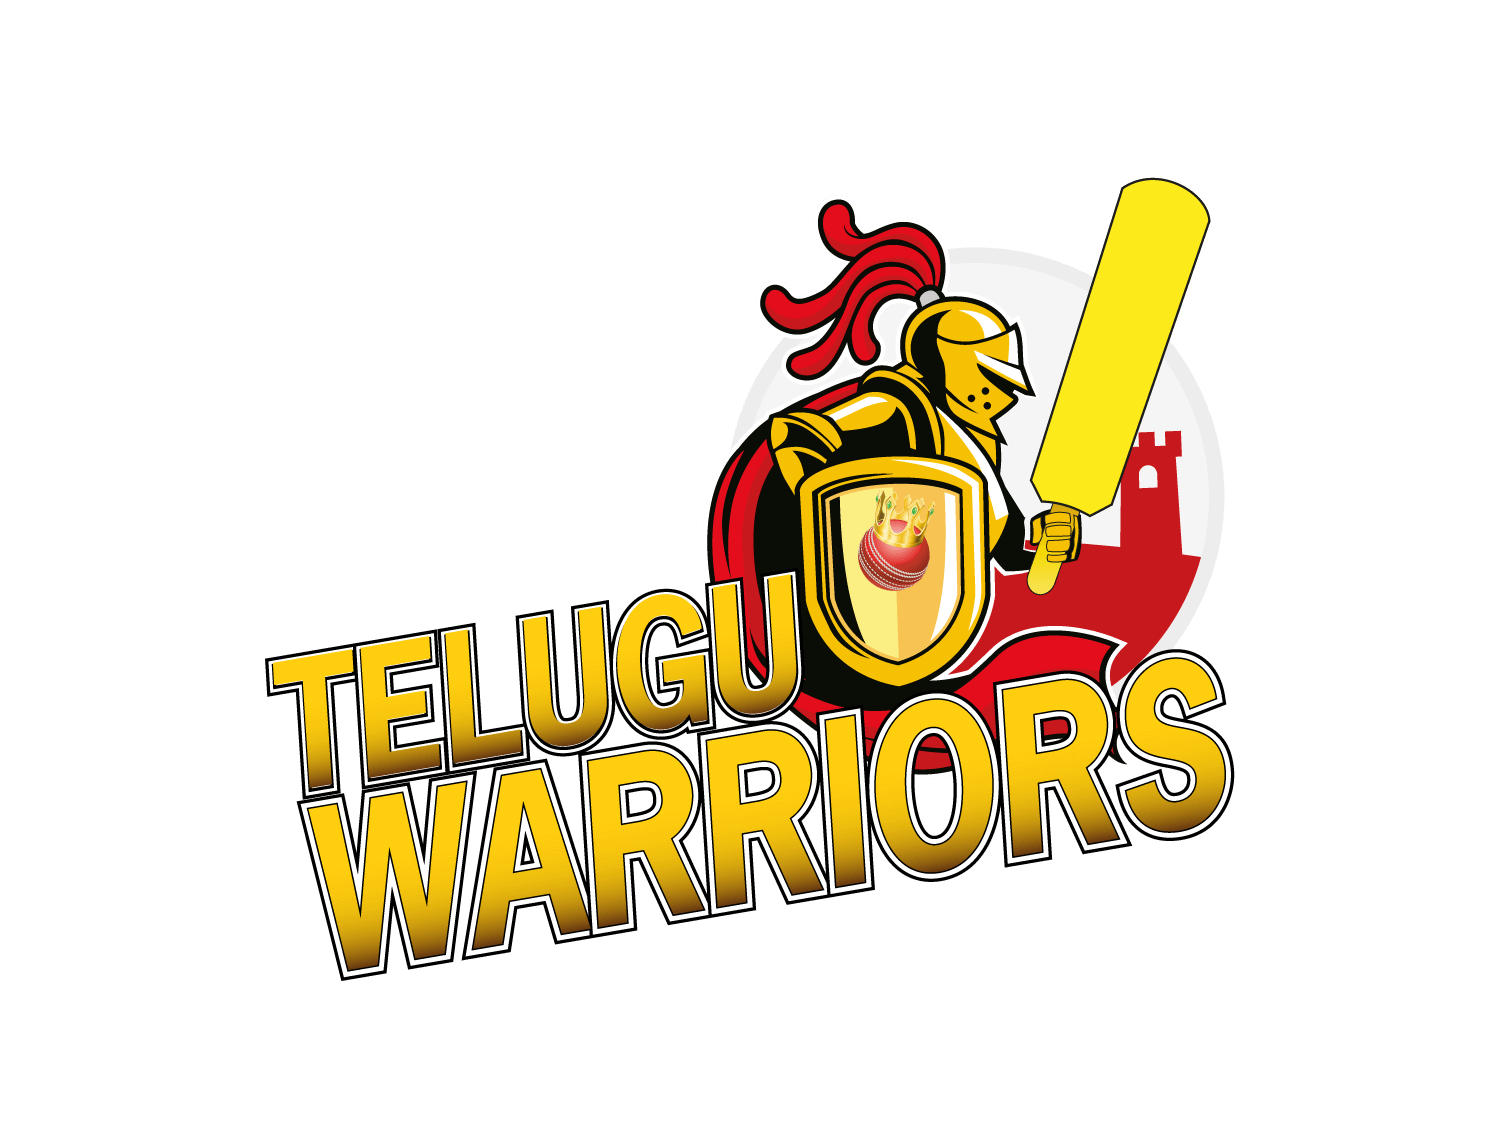 Telugu Warriors, team history